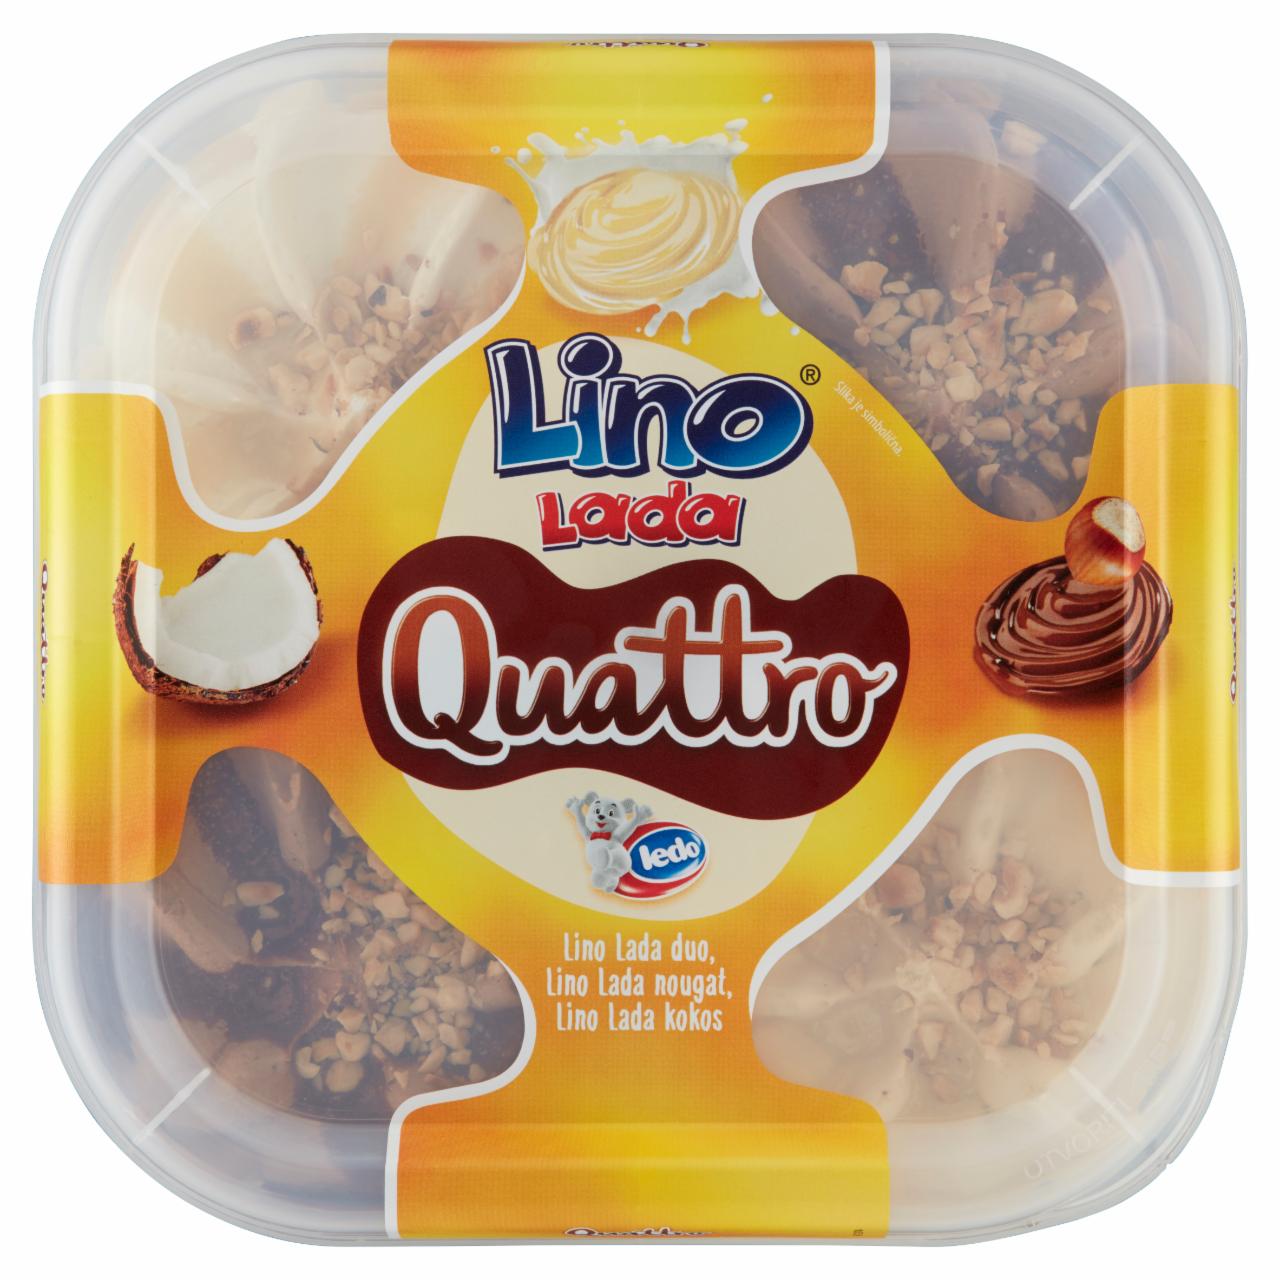 Képek - Lino Lada Quattro mogyorókrémes-nugát krémes jégkrém, tejes krém-kókusz ízű jégkrém 1650 ml